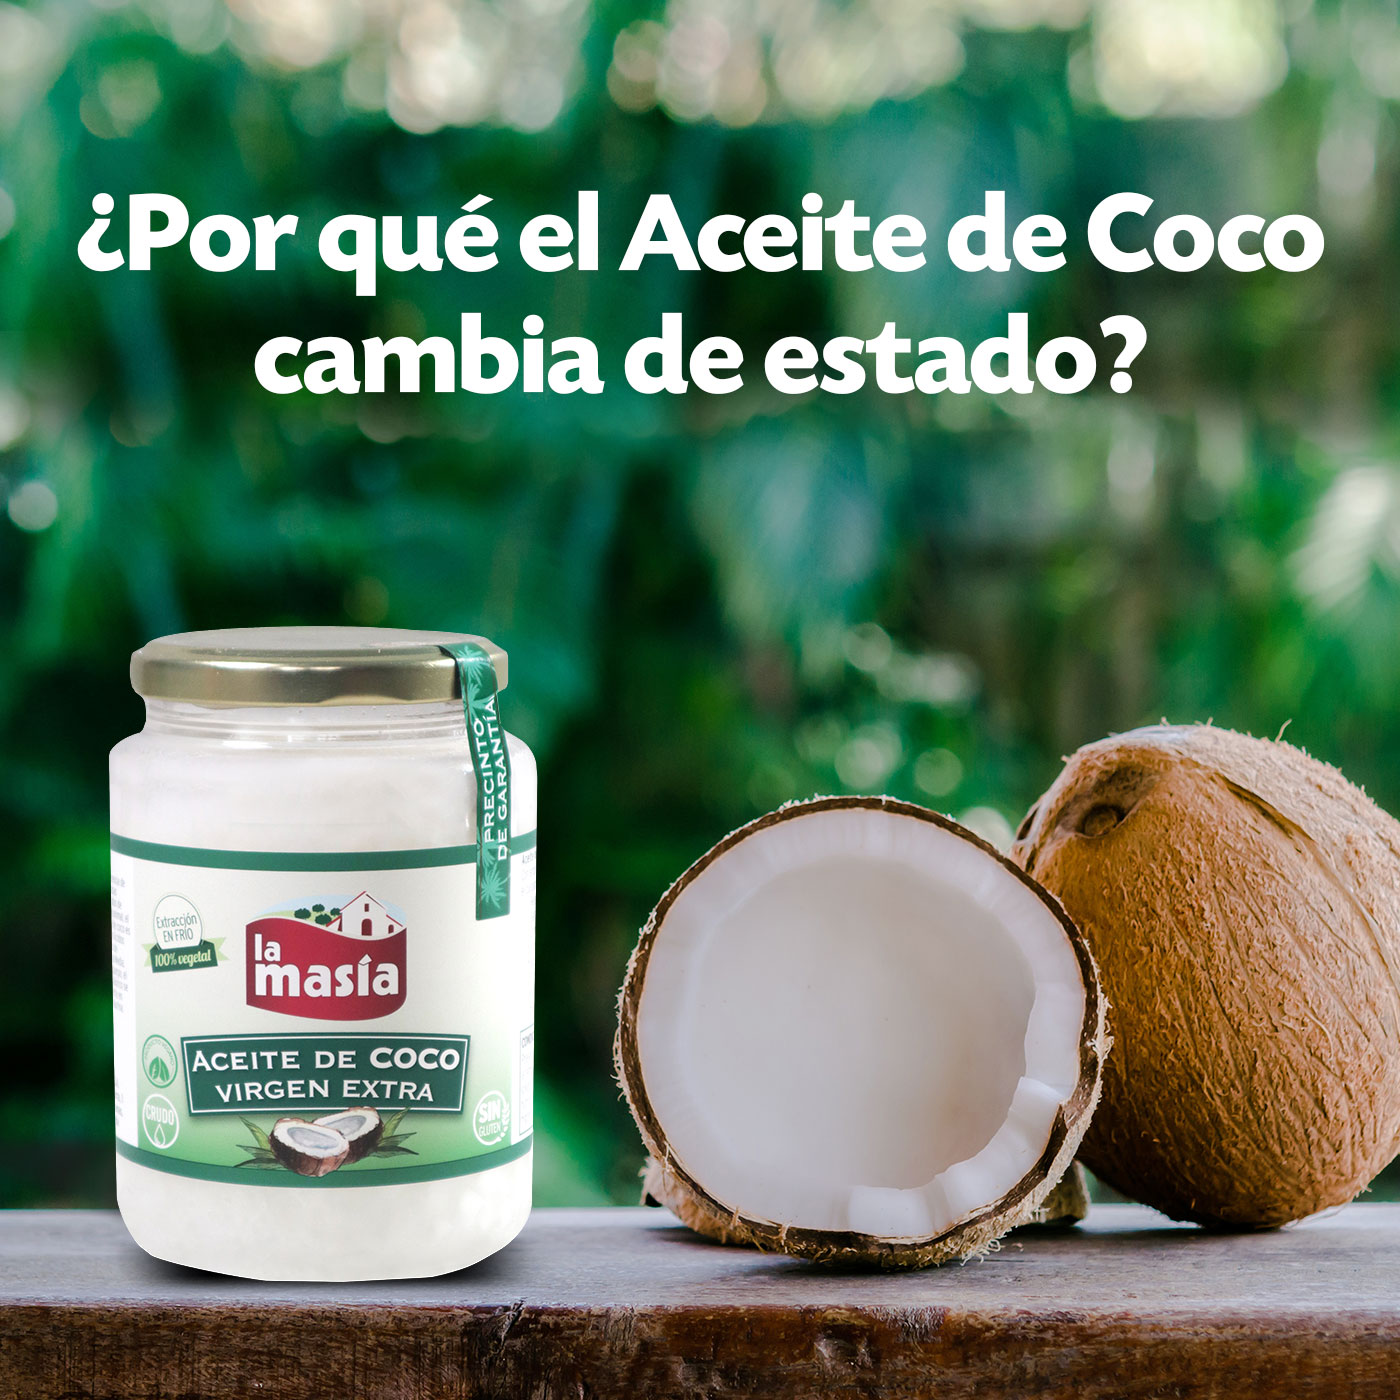 Por qué el Aceite de Coco Virgen Extra cambia de estado? | Aceites la masia